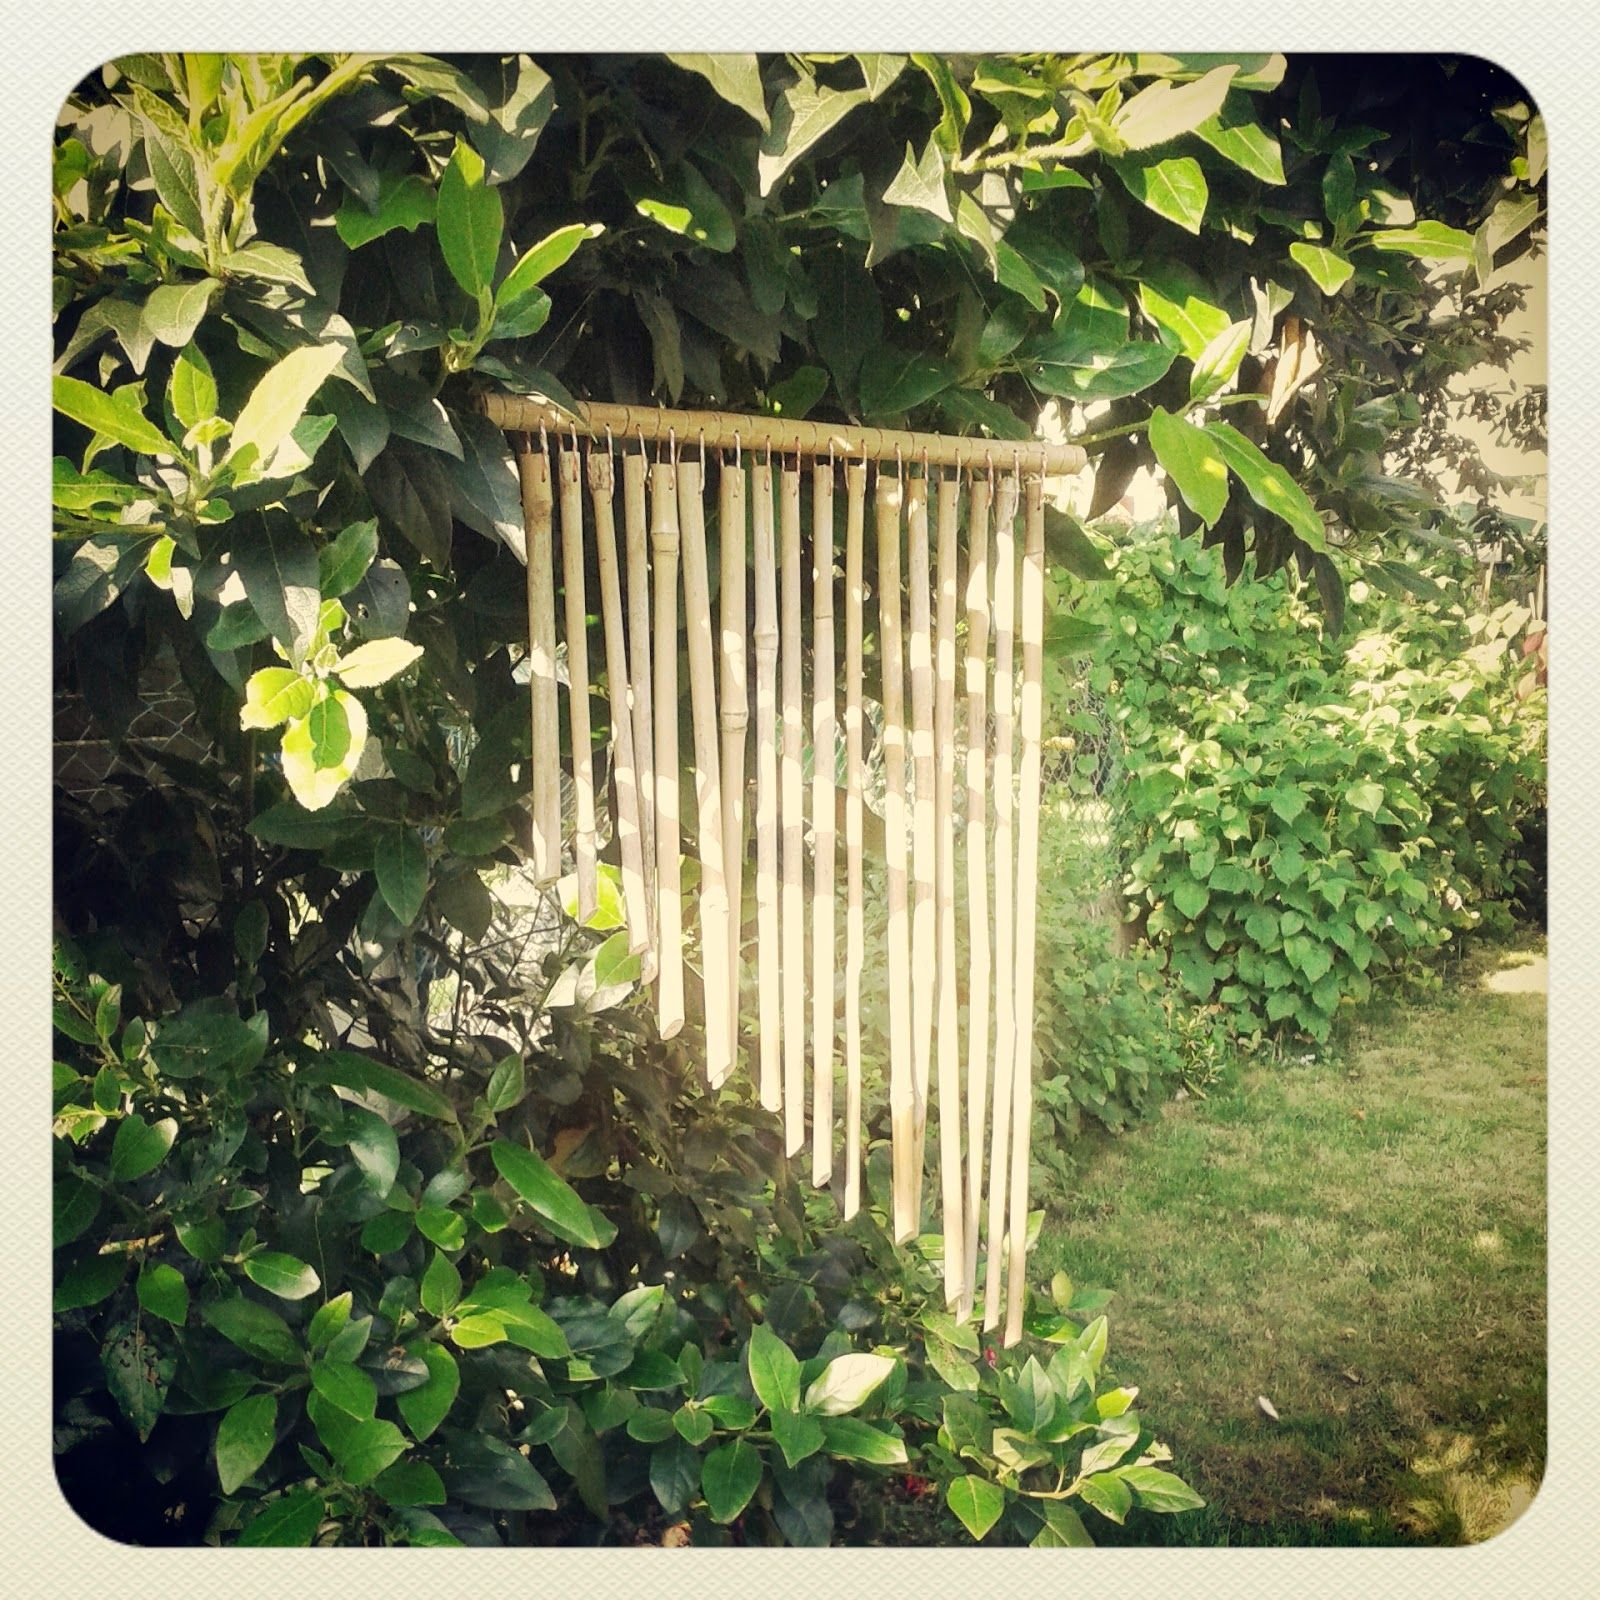 Carillon En Bambou | Idées Jardin, Bambou, Diy Bambou dedans Carillon Bambou Jardin